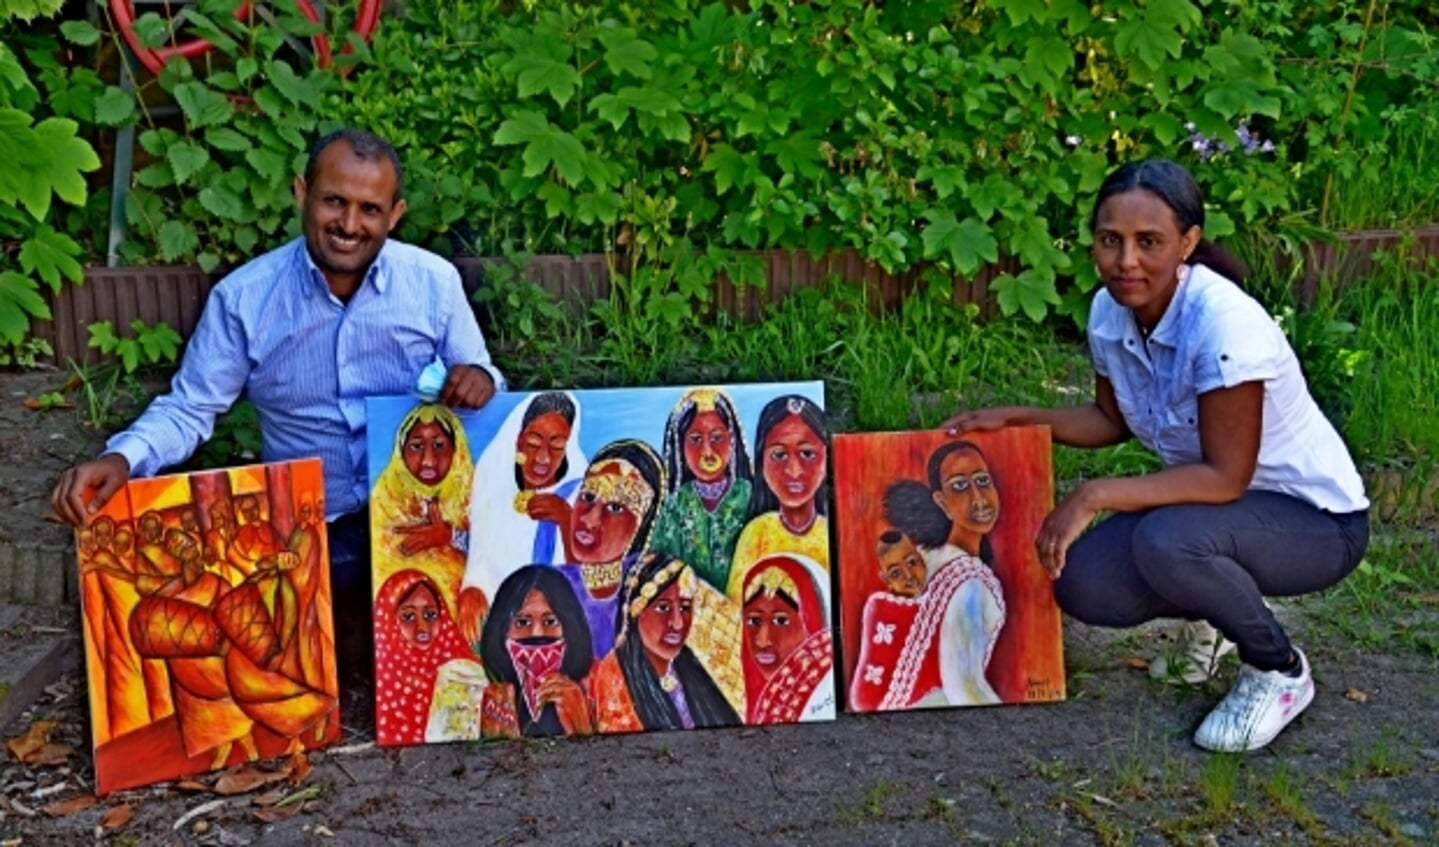 Awet Afeworki en Shishay Tecle met schilderijen van Awet. Ze exposeert de hele maand juni in de bblthk (foto Jan Boer)